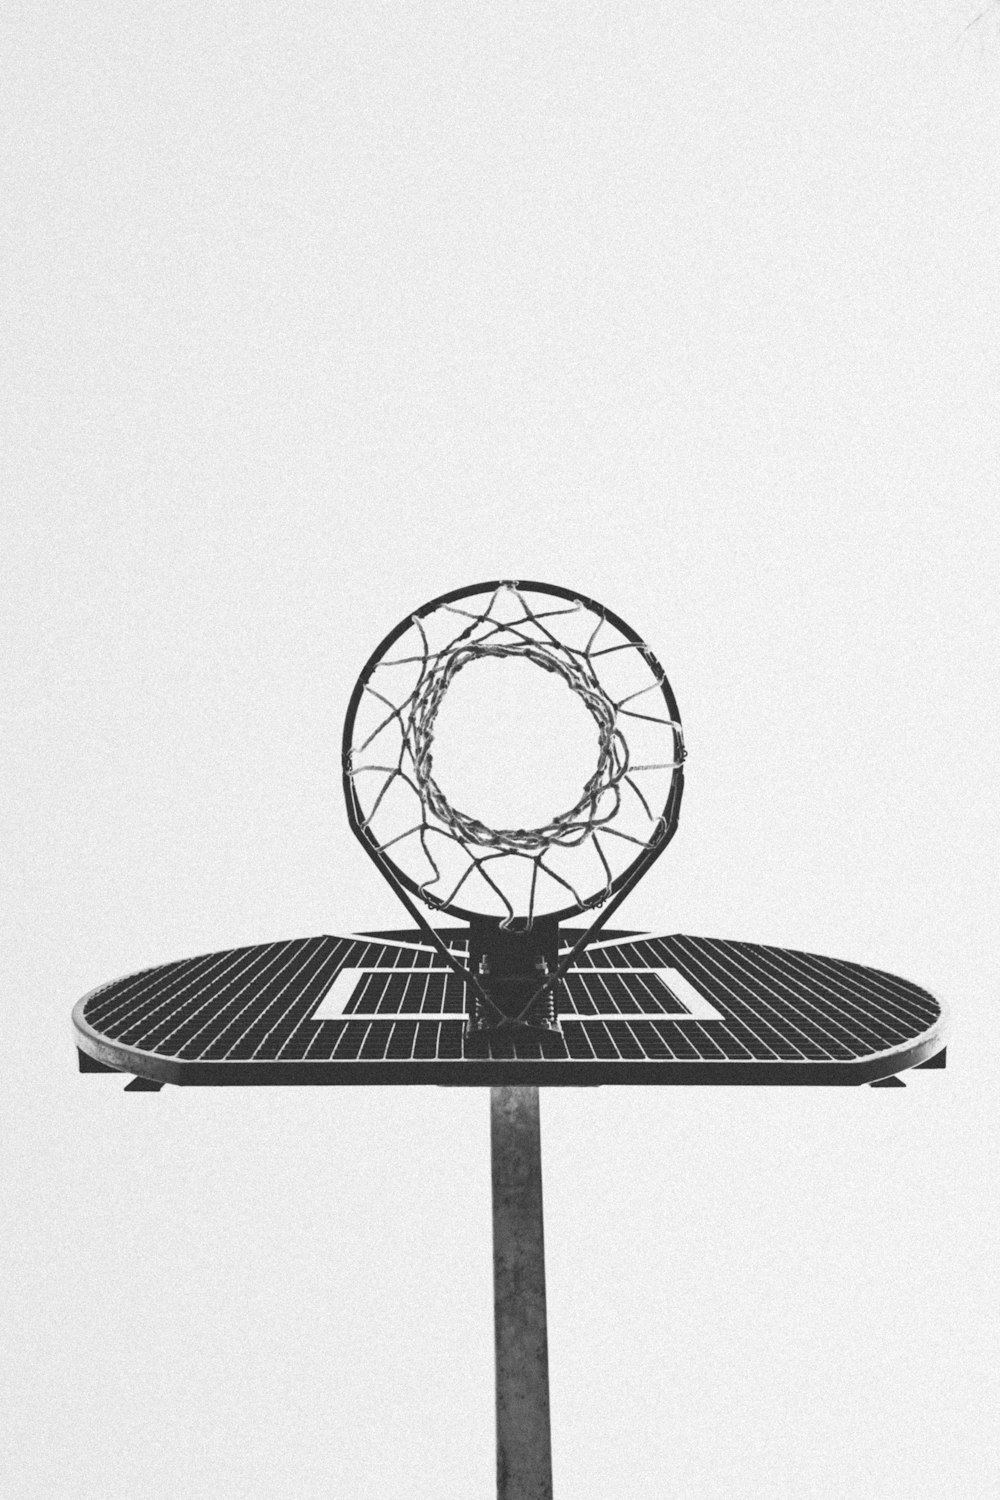 Une photo en noir et blanc d’un panier de basket-ball